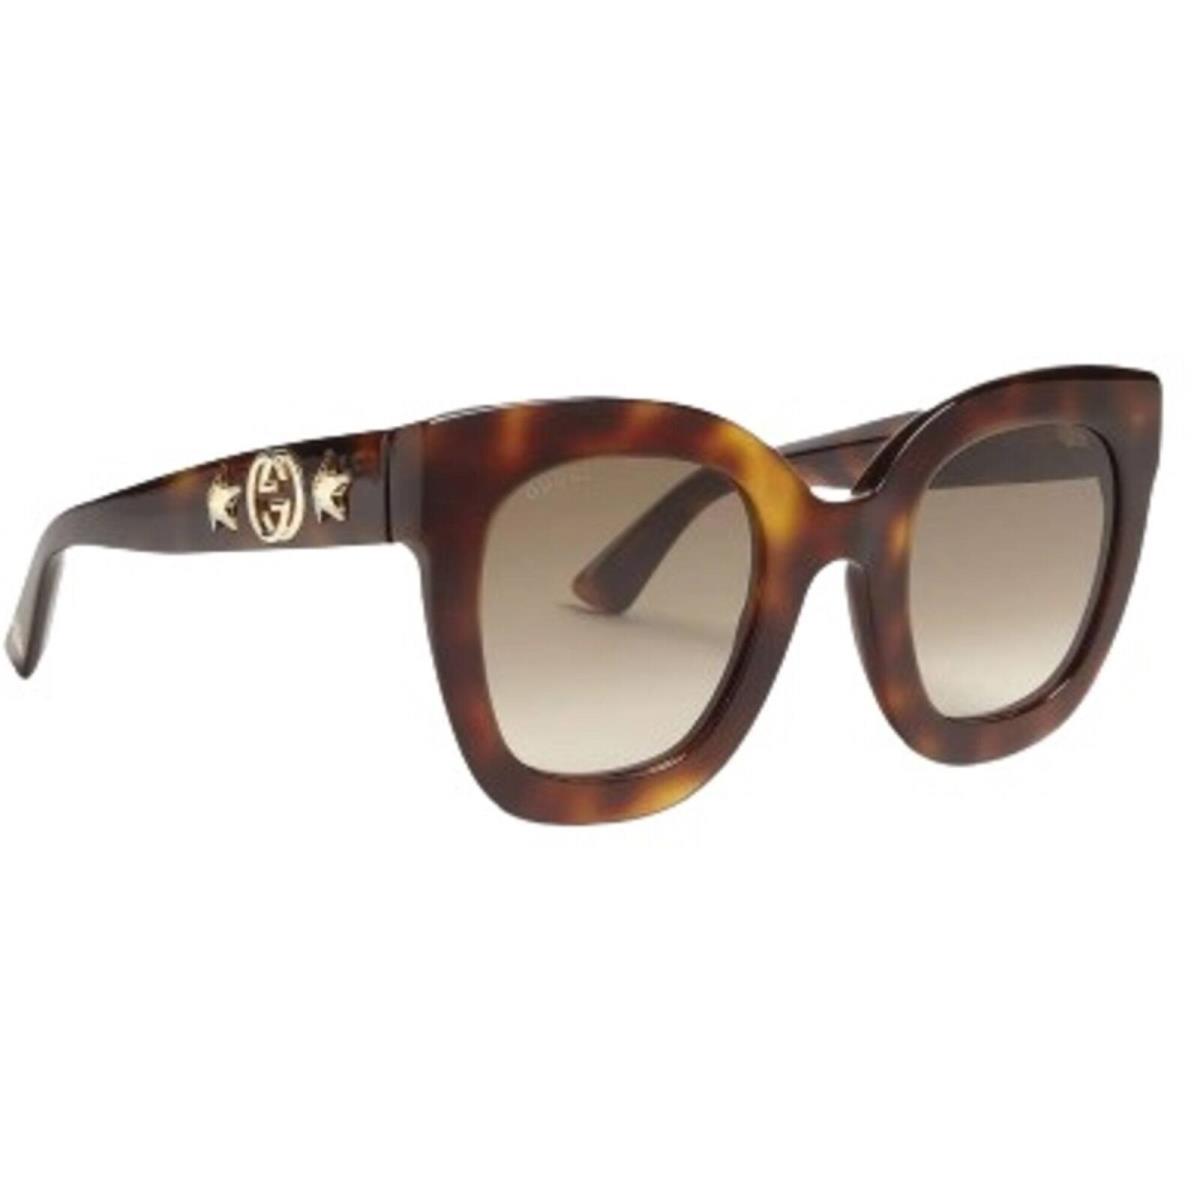 Gucci Women`s Sunglasses Havana Acetate Full Rim Butterfly Frame GG0208S 003 - Frame: Havana, Lens: Brown Gradient